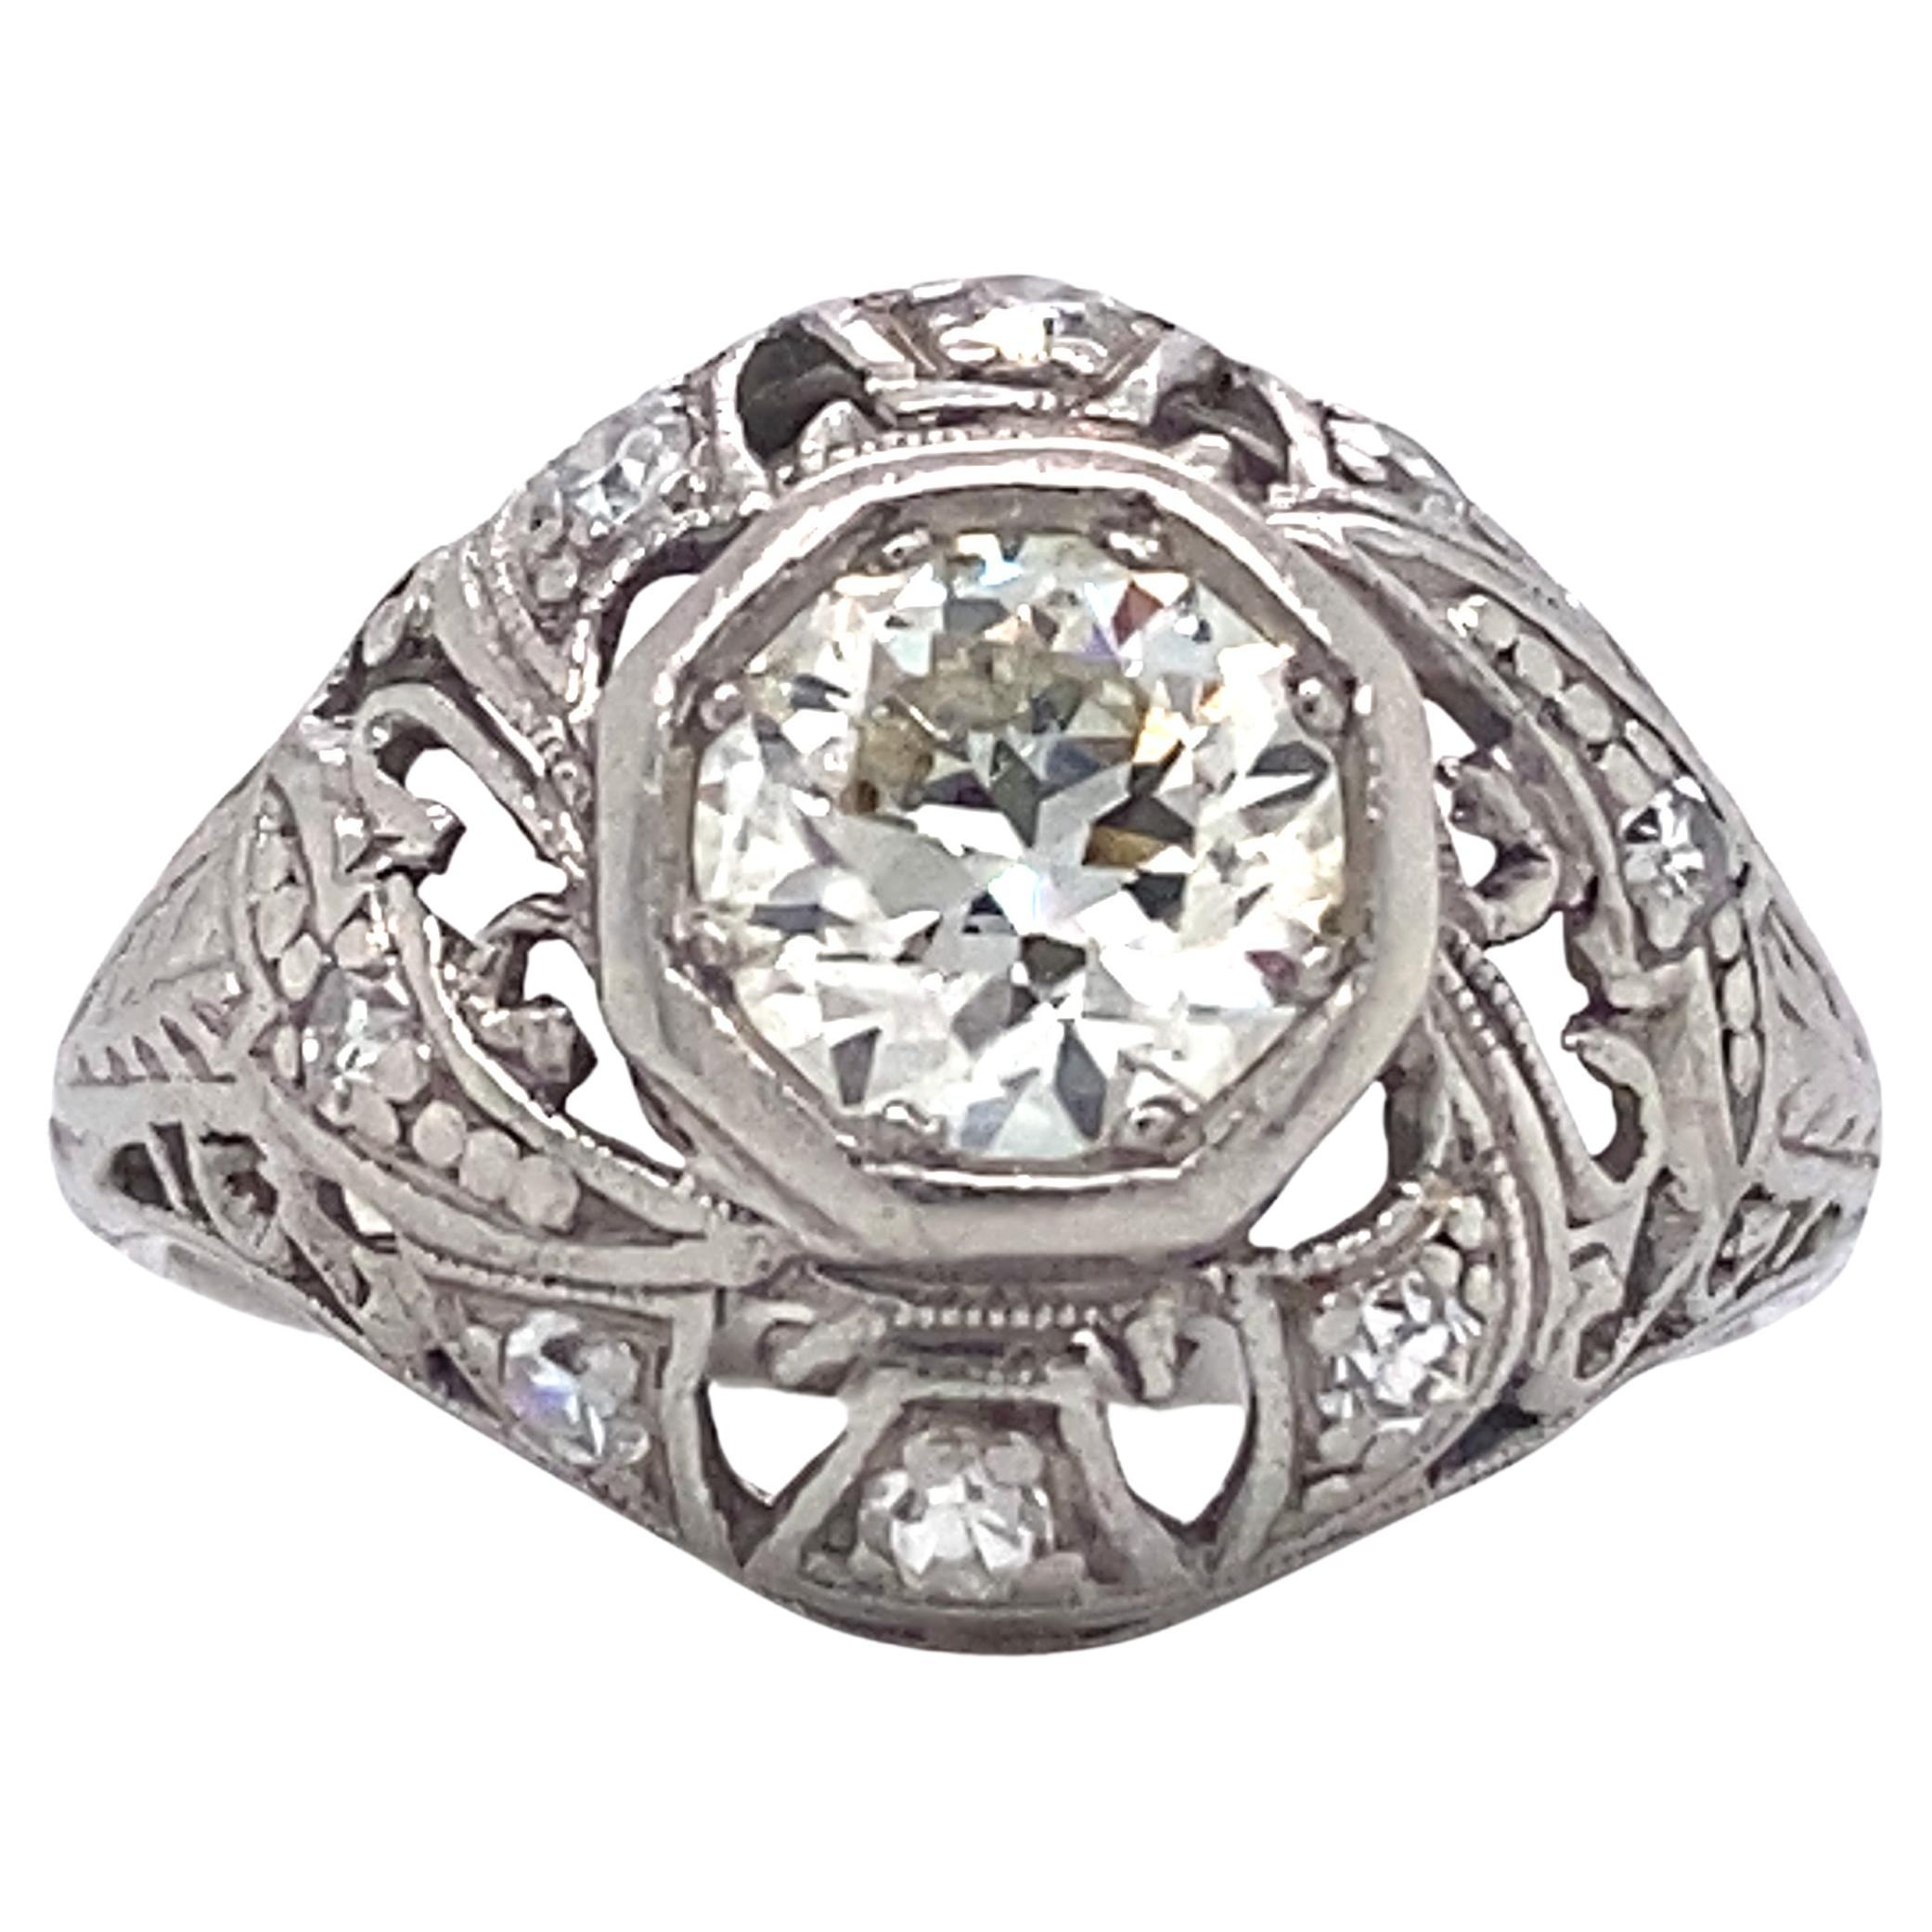 Circa 1920 Art Deco 0.93 Carat Diamond Ring, Platinum